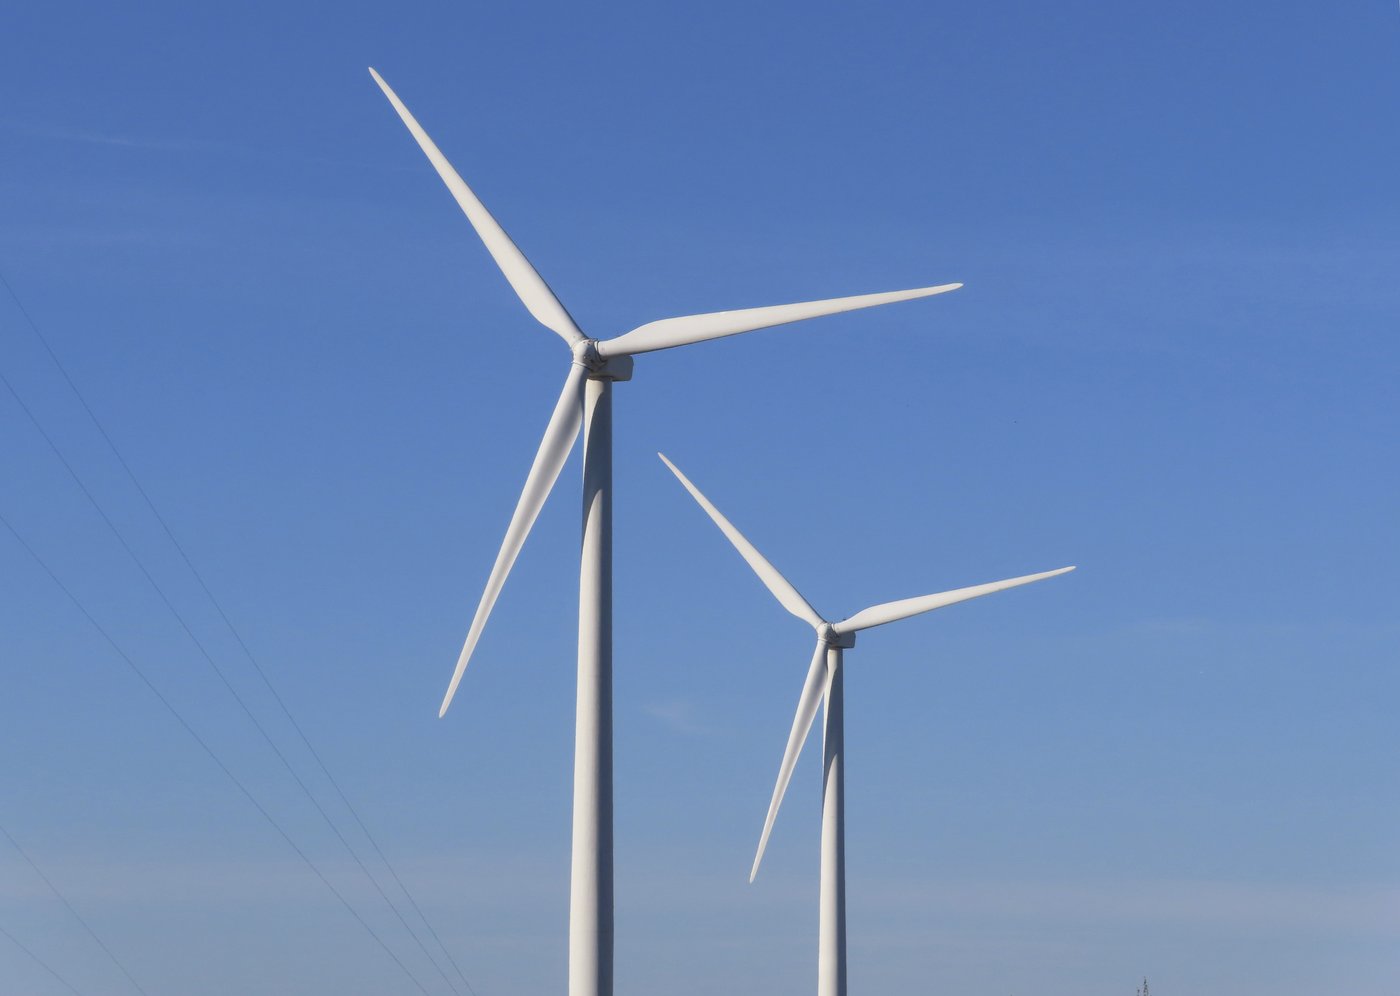 Hydro-Québec deviendra maître d’oeuvre de projets éoliens à grande échelle